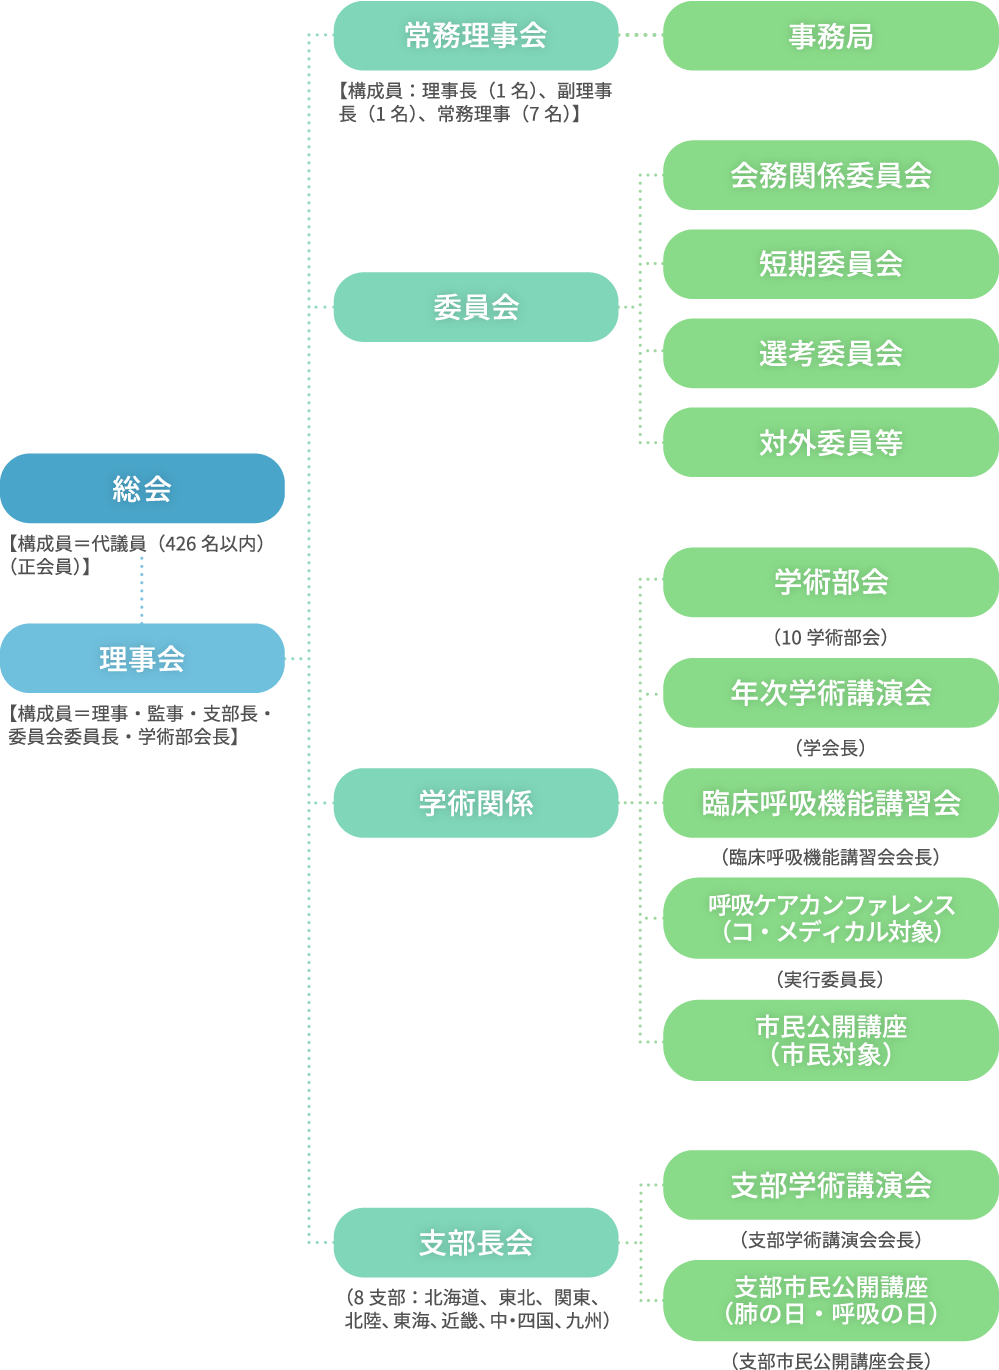 一般社団法人日本呼吸器学会組織図